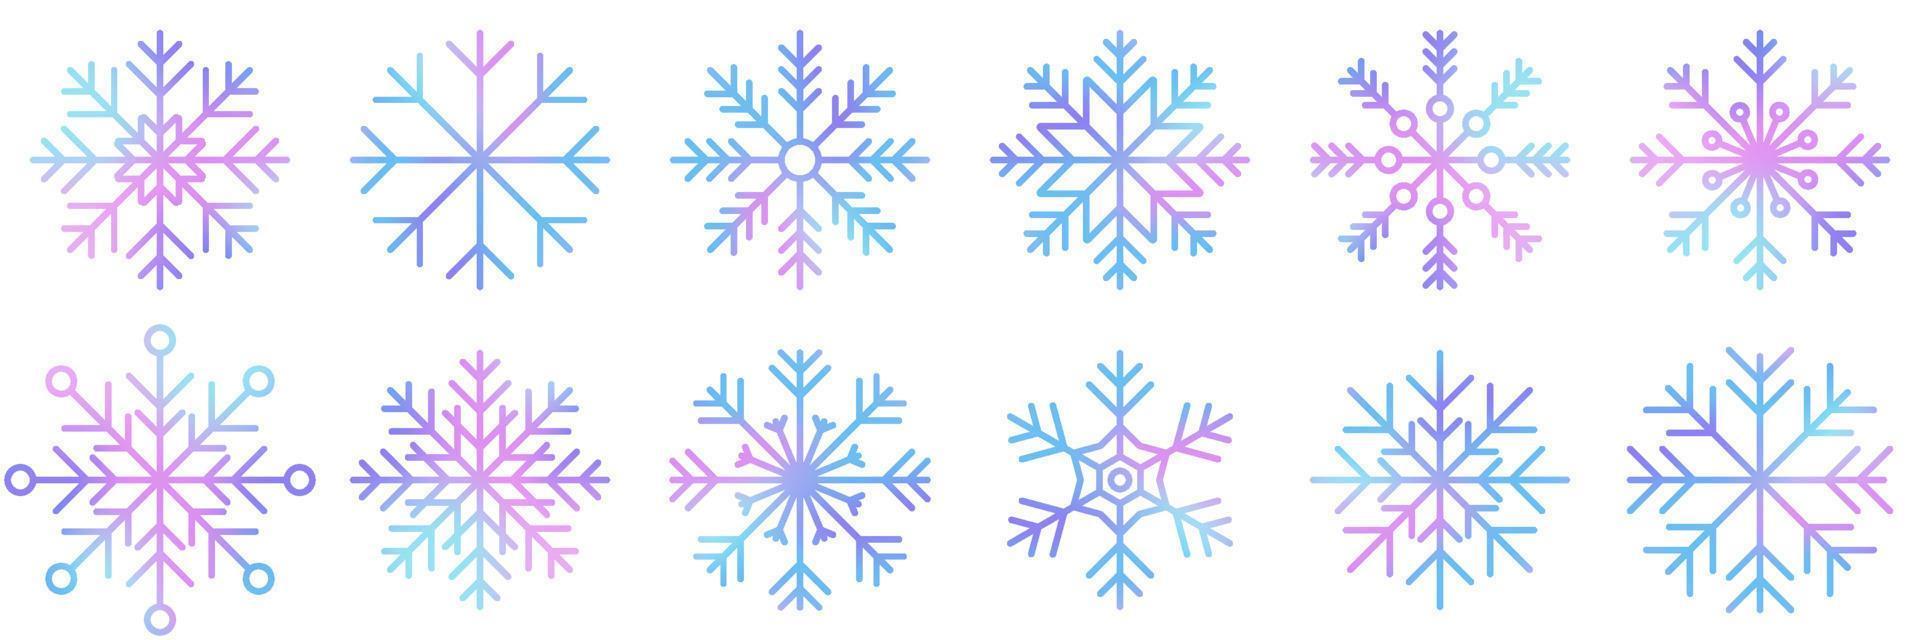 reeks van vector waterverf sneeuwvlokken. verzameling van artistiek sneeuwvlokken met waterverf textuur. reeks van sneeuwvlokken. vector illustratie